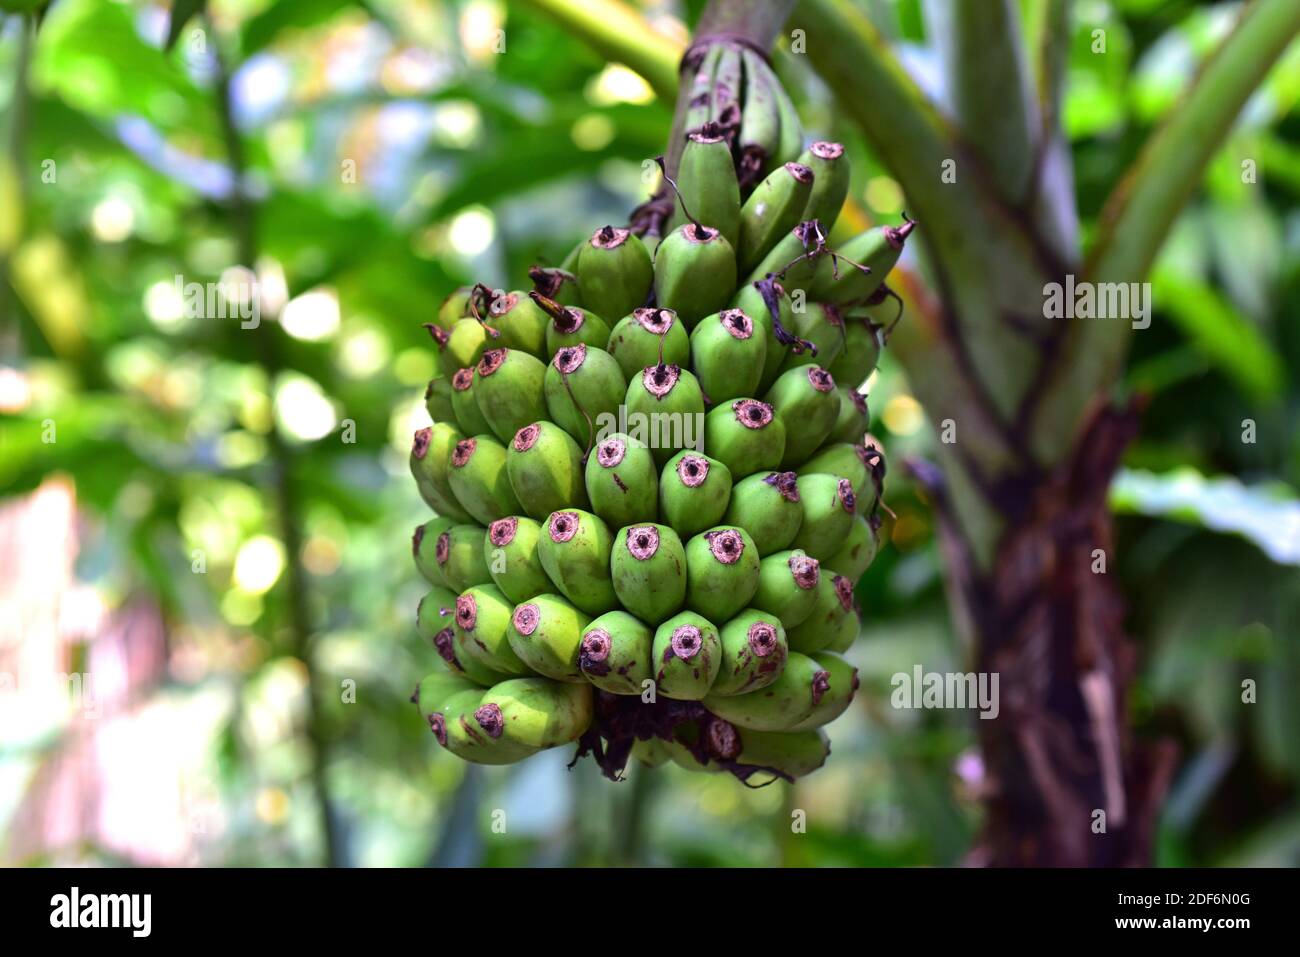 Malaiische Banane (Musa acuminata) ist eine mehrjährige Pflanze, die in Südostasien beheimatet ist. Seine Früchte (Detail) sind essbar. Stockfoto